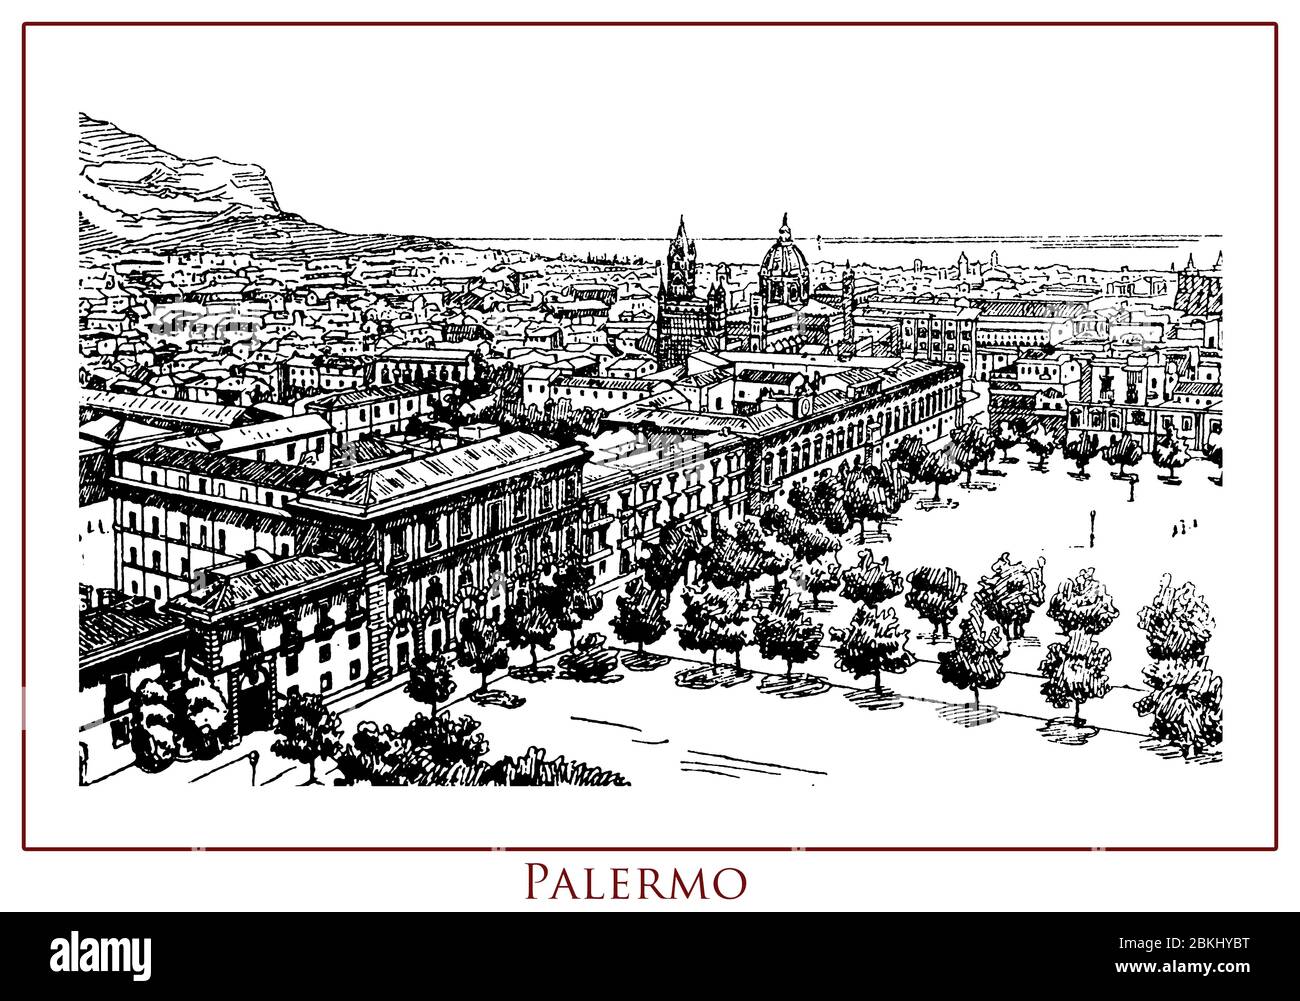 Tavolo illustrato d'epoca con vista panoramica sulla città di Palermo, 2700 anni, capitale dell'isola siciliana e regione del Sud Italia, città ricca di storia, arte e cultura. Foto Stock